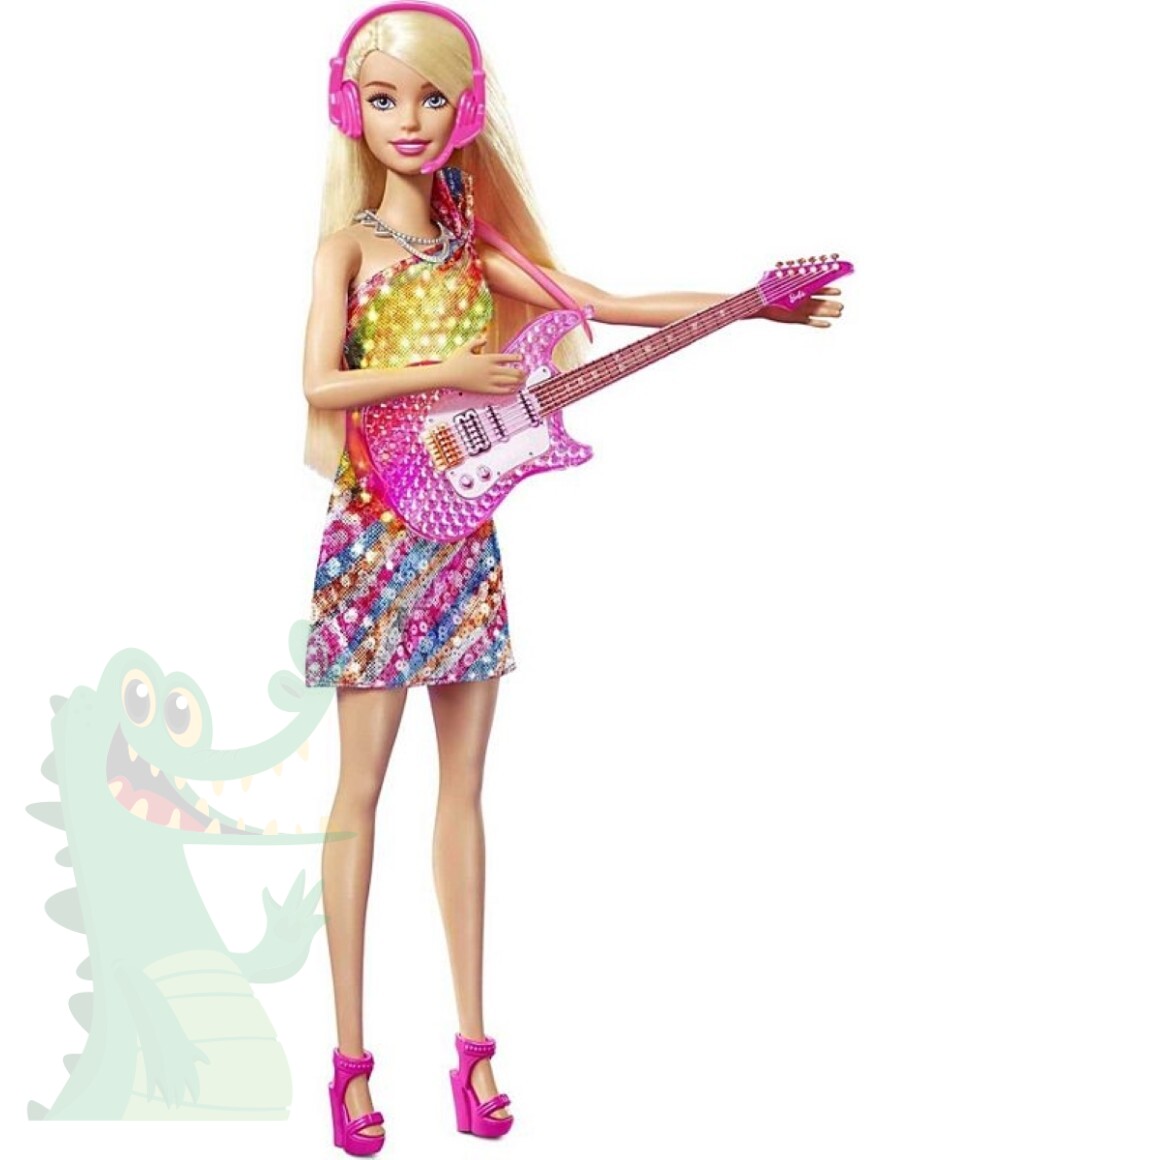 Tocador de Beleza Barbie com Funções de Luz e Som